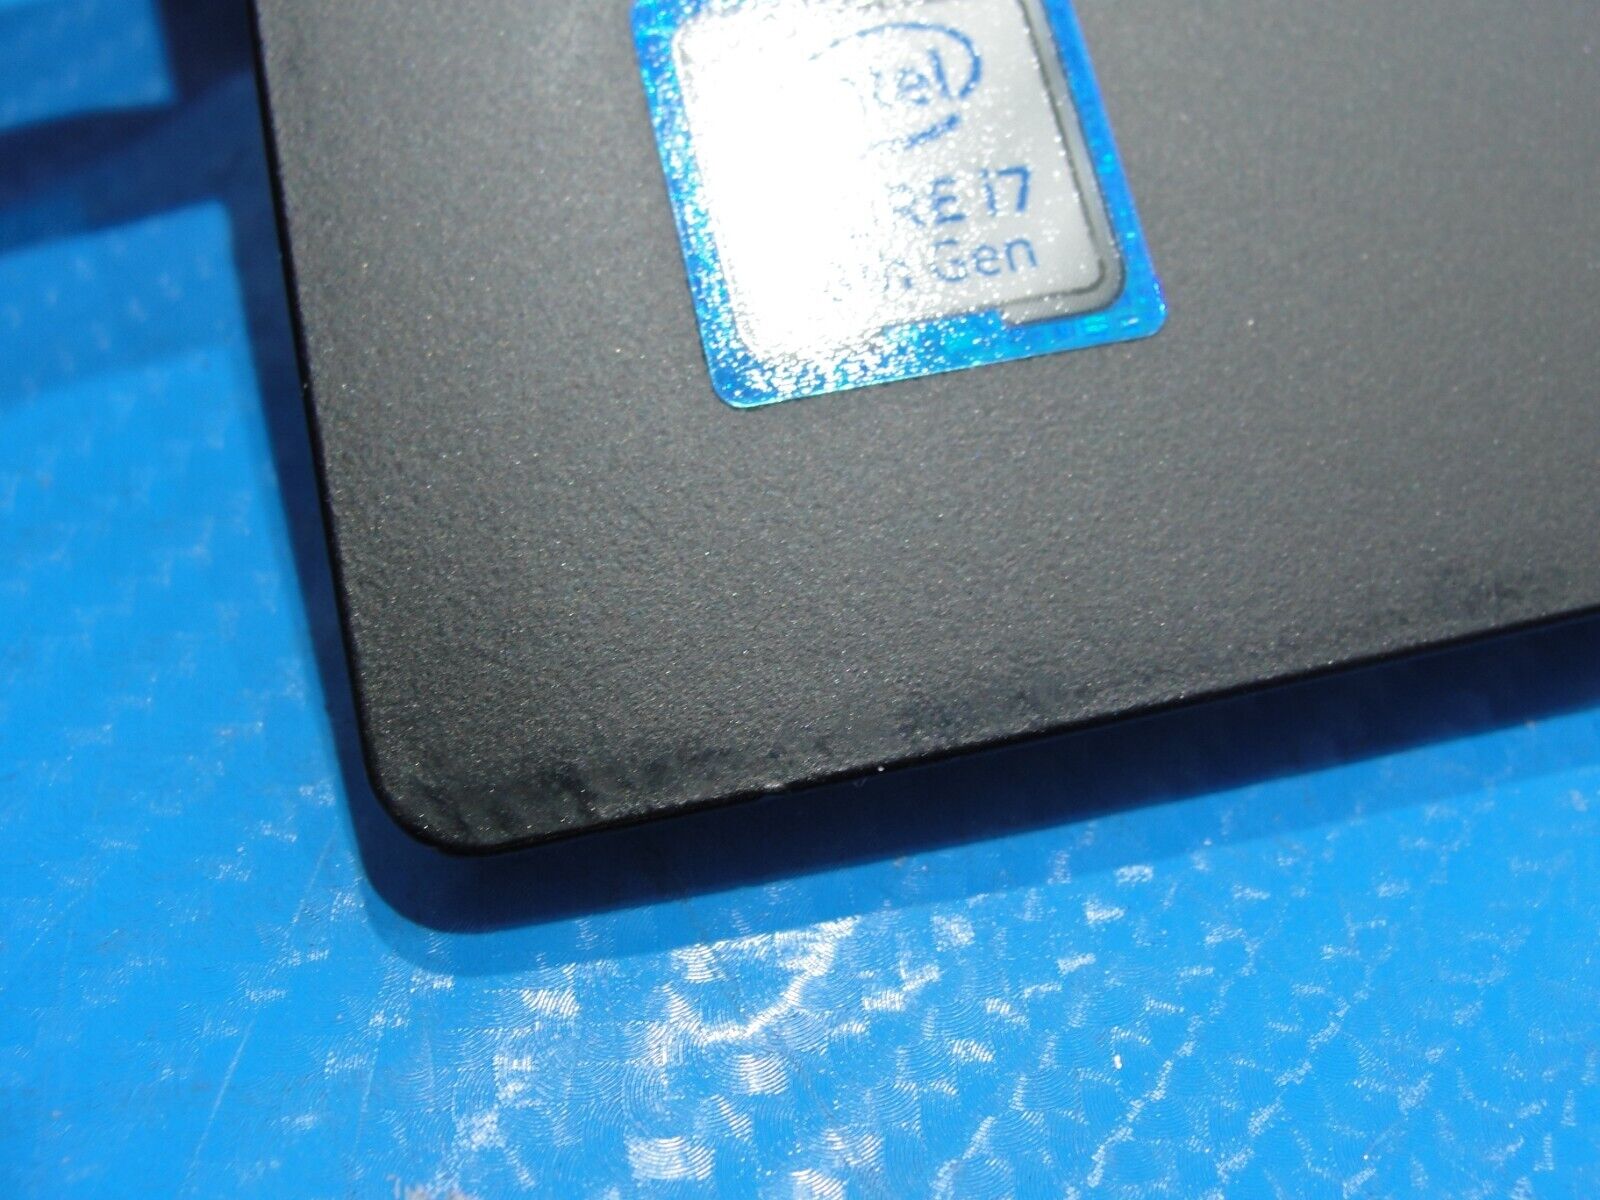 Lenovo ThinkPad E590 15.6